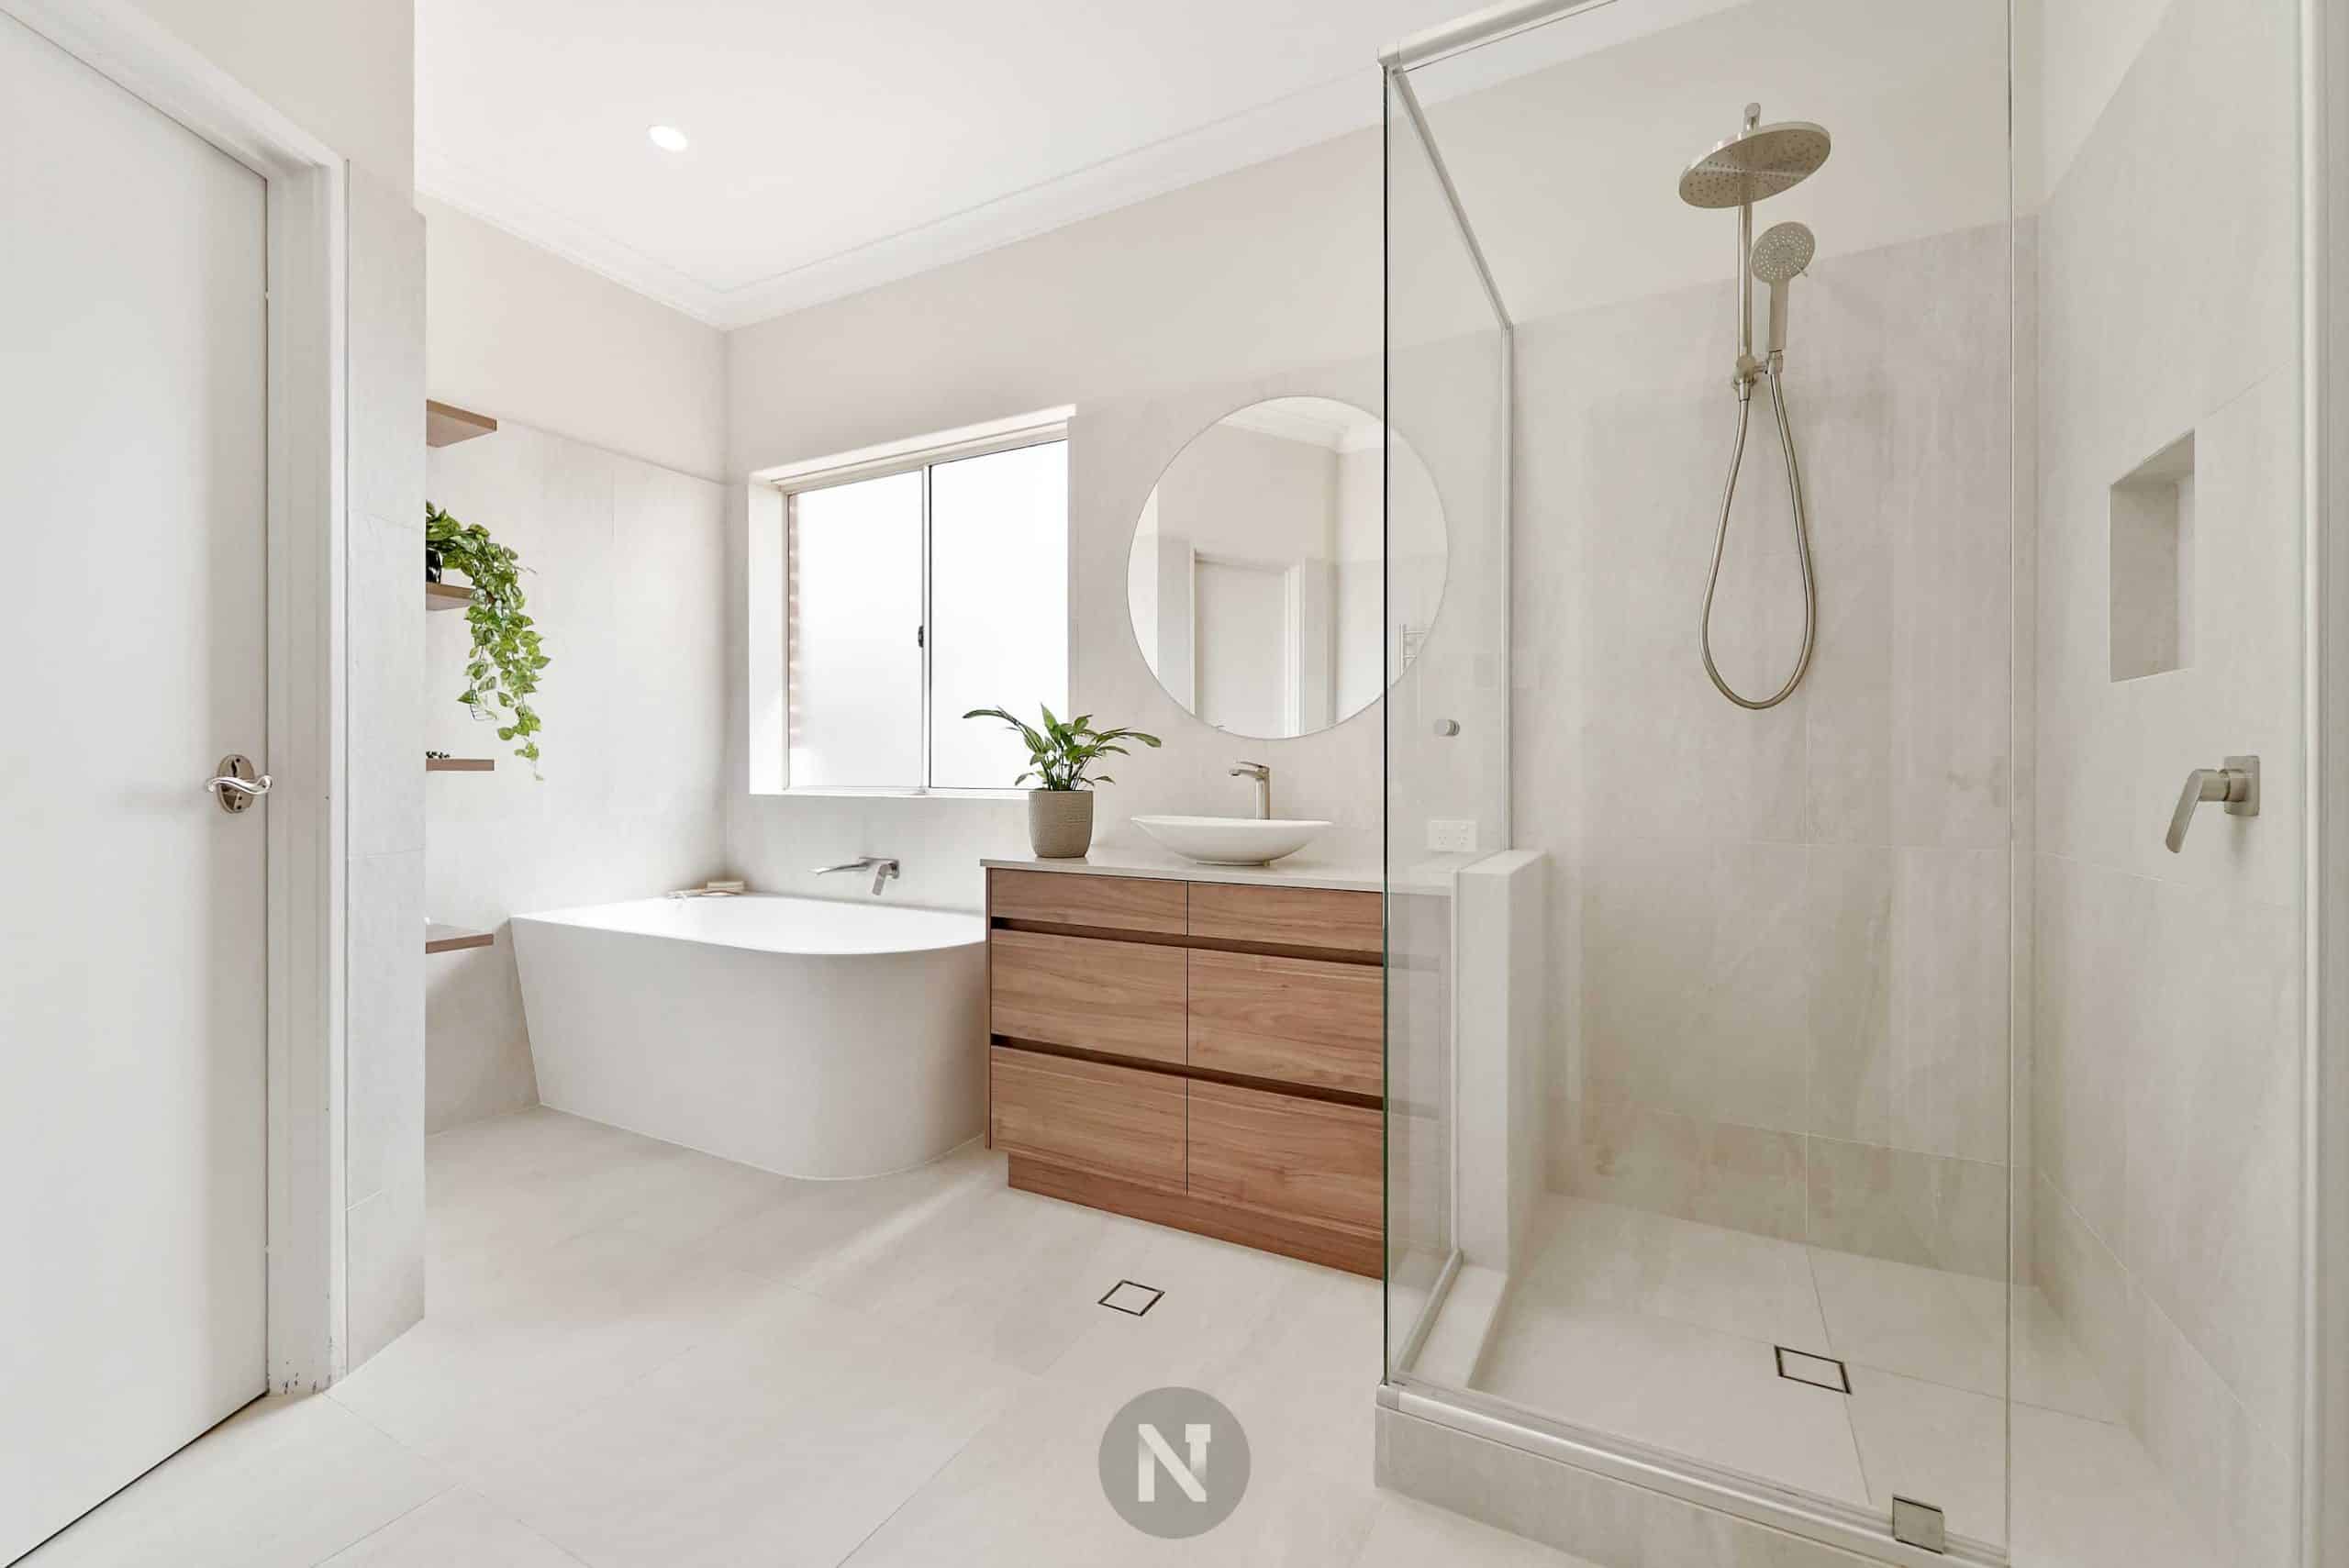 nbr-kensington-bathroom-renovation-after-5